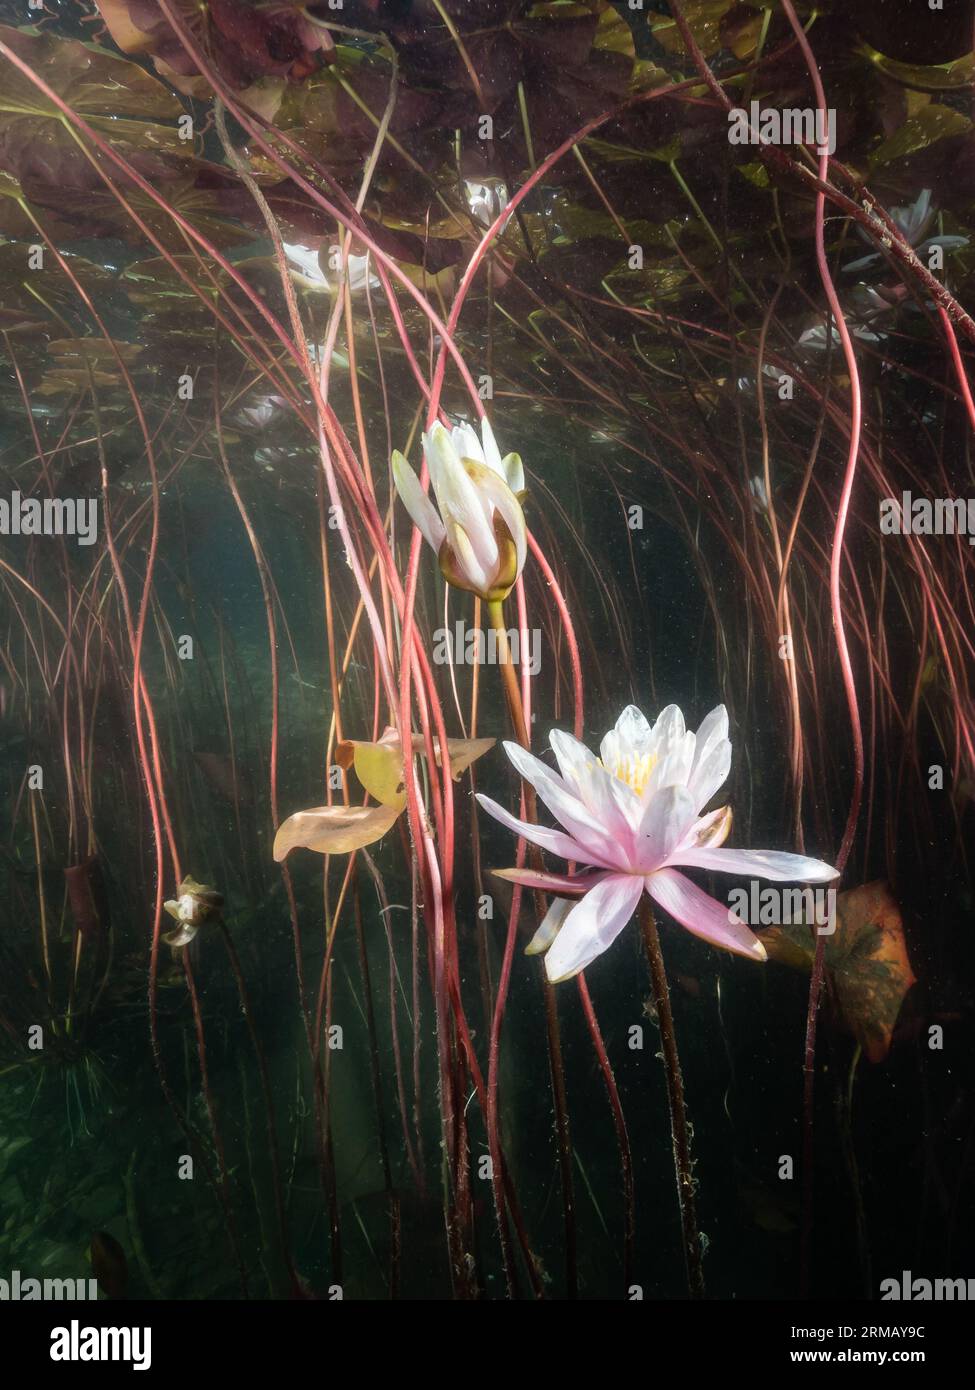 Seerosen (Nymphaea) ,water lily,Seerosenblüte,NRW,Germany Stock Photo